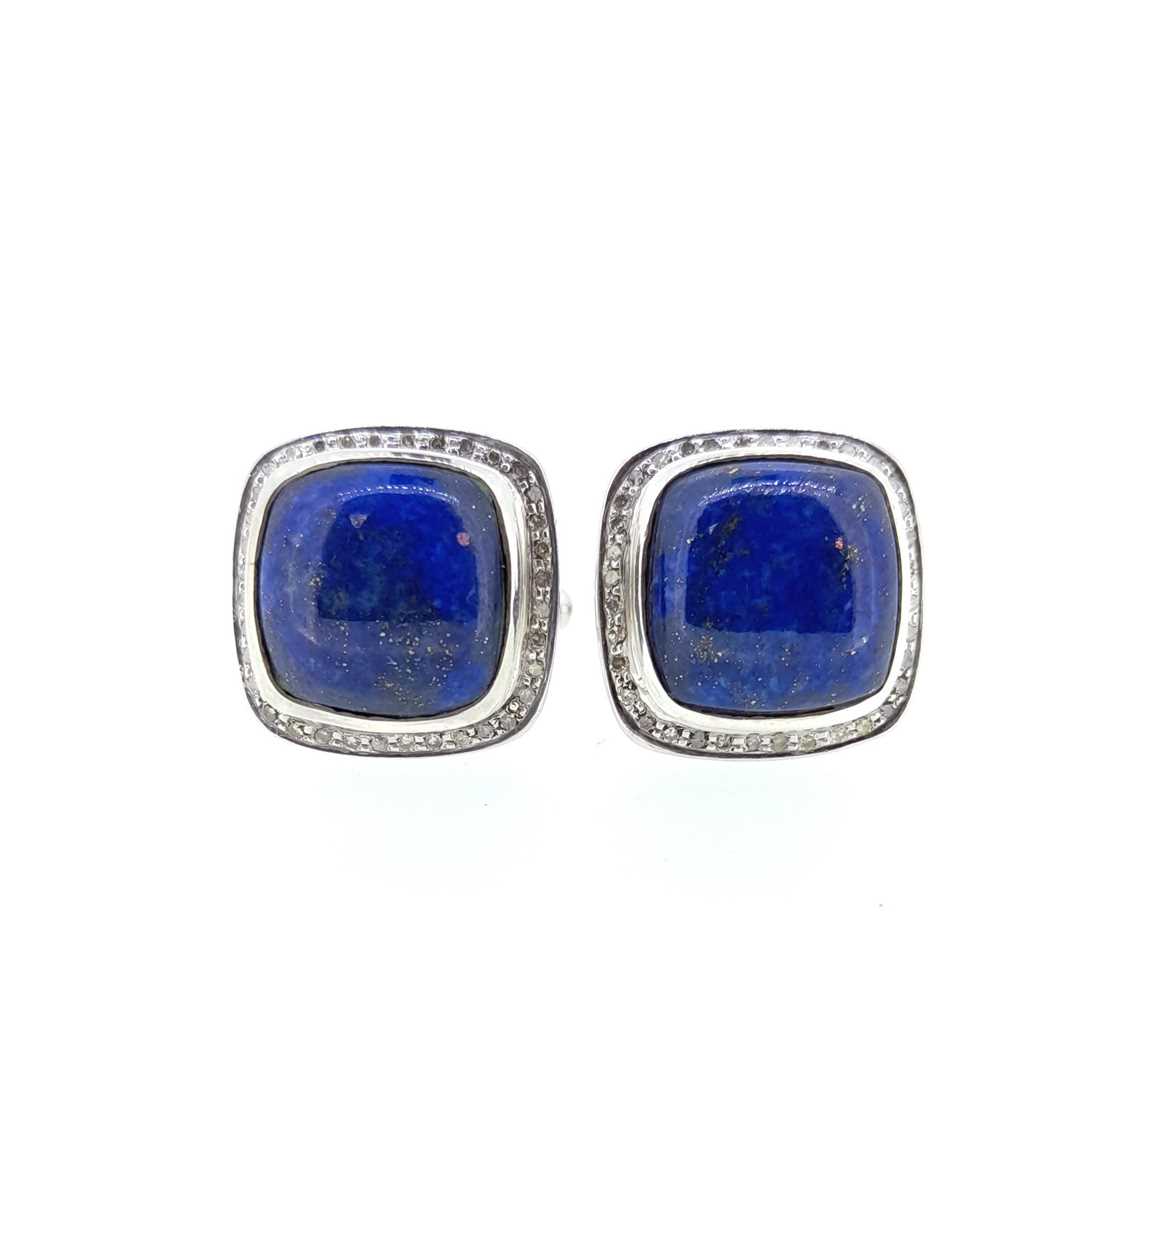 A pair of lapis lazuli and diamond cufflinks, - Image 3 of 3